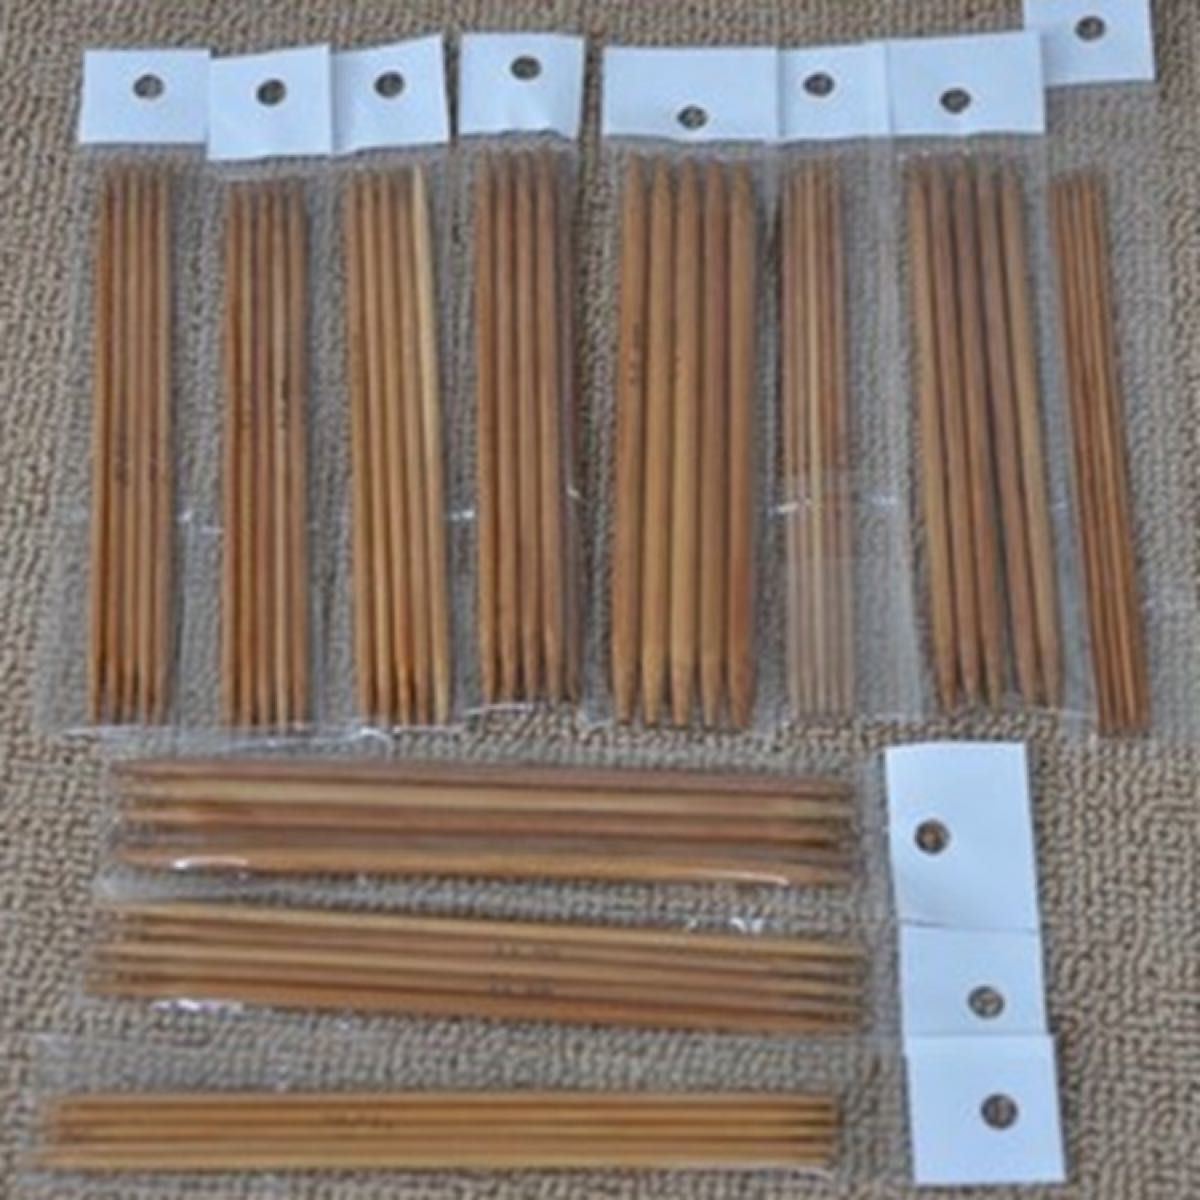 棒針 竹製 編み棒 編み物 手芸 冬物 編み針 55本セット 11種類 13cm ハンドメイド 手編み 手作り